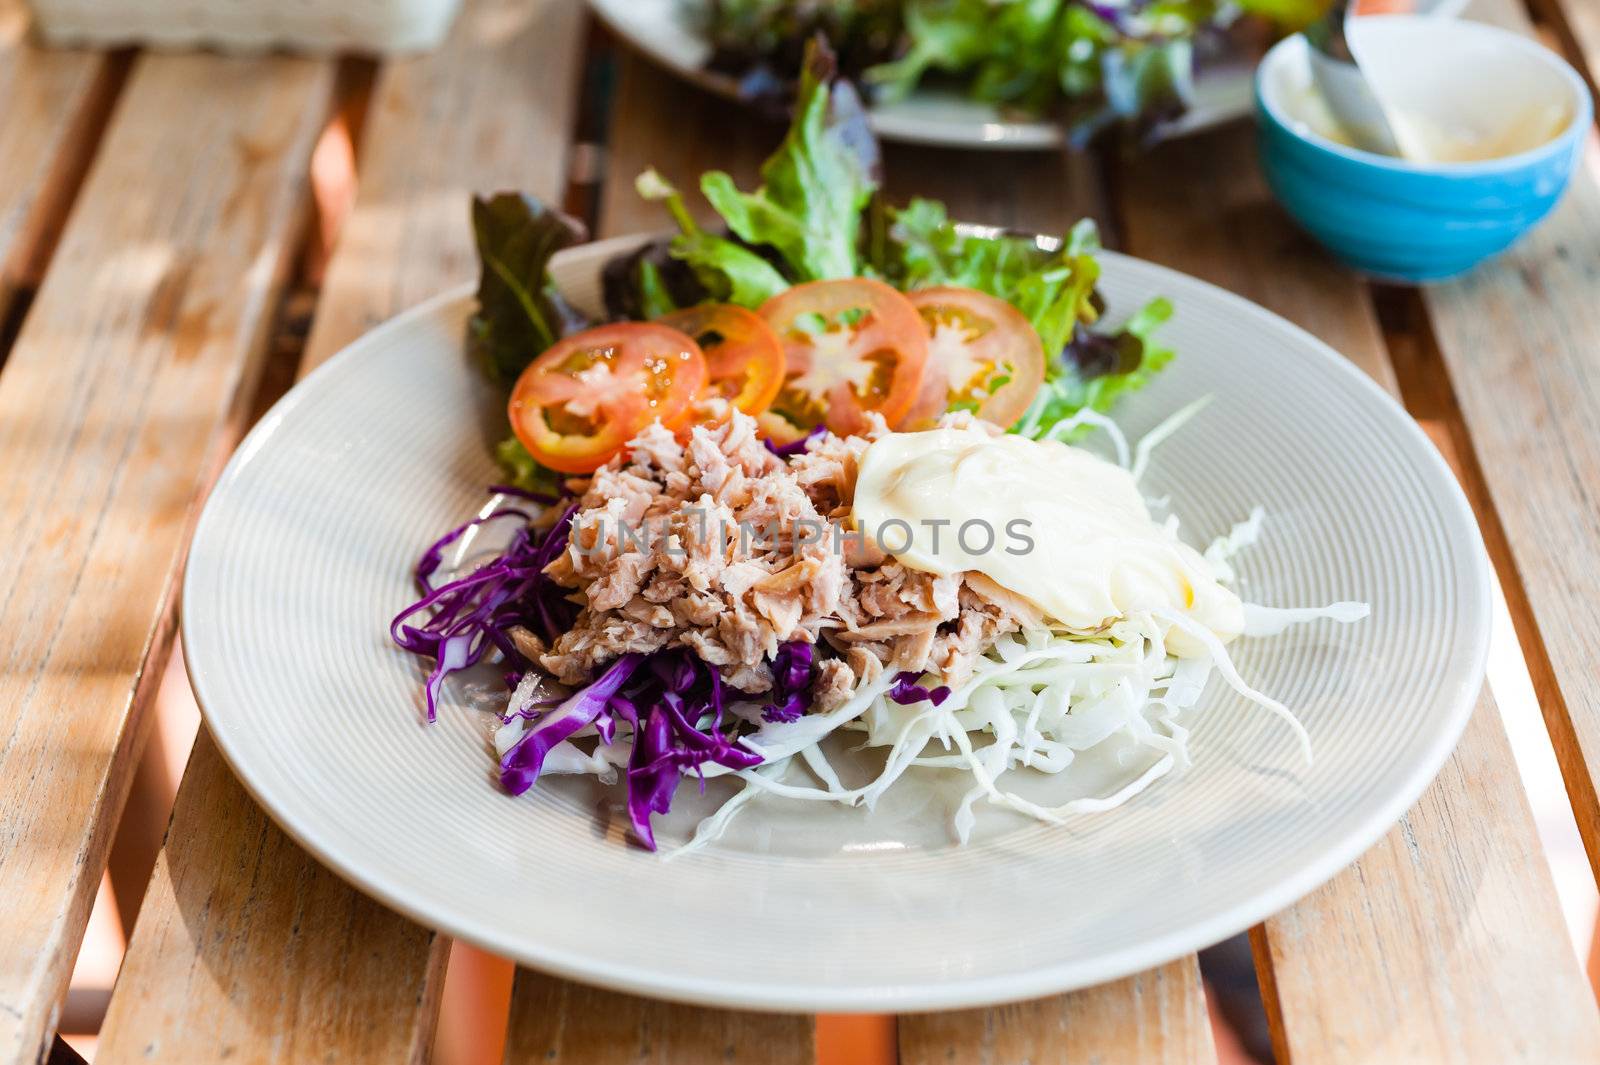 tuna salad on wood table by moggara12